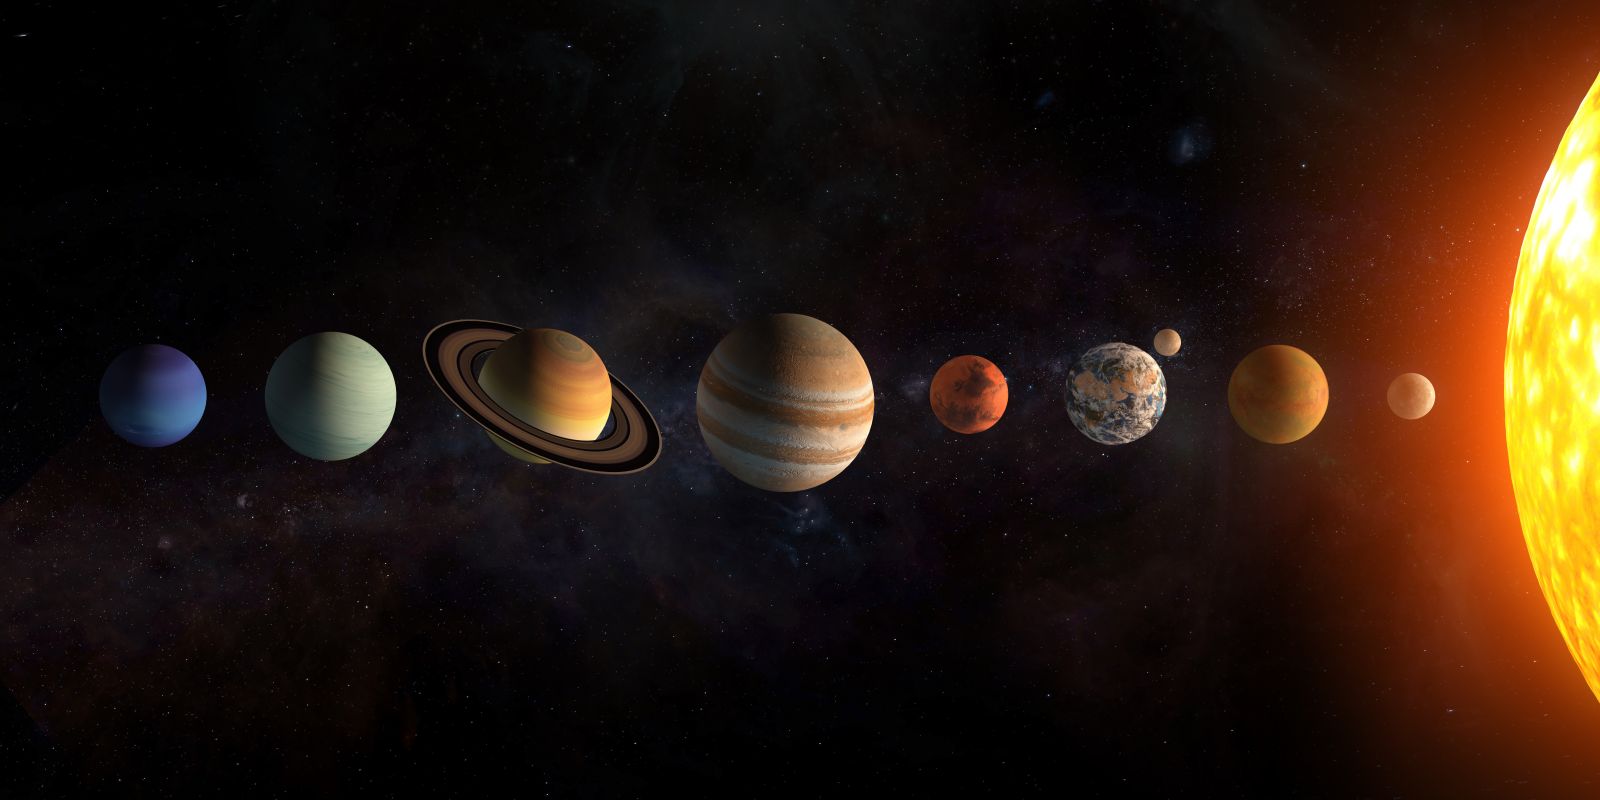 Naprendszer világűr bolygók együttállás Nasa Föld égbolt ritkaság csillagászat 2022 nyár 